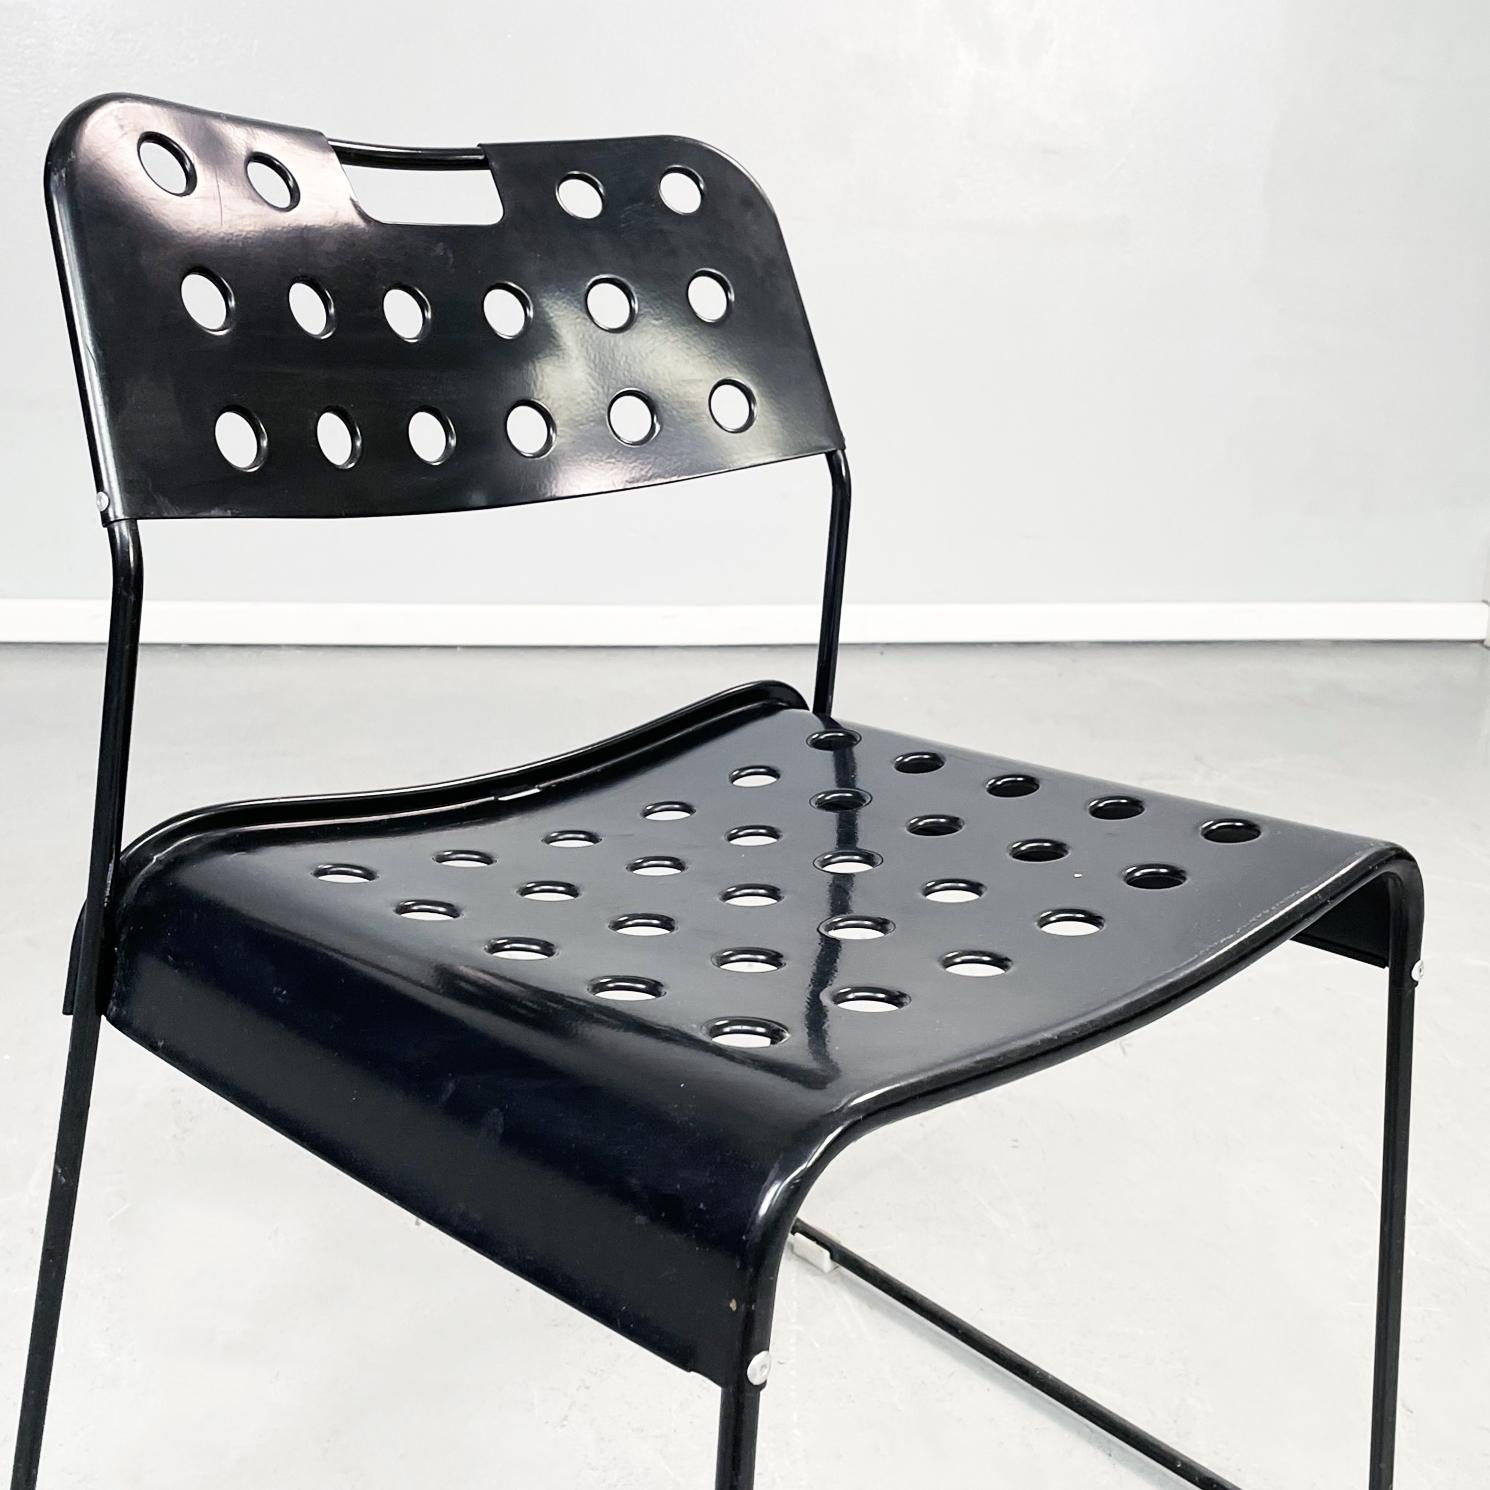 Italian Modern Black Steel Chairs Omstak by Rodney Kinsman Bieffeplast, 1970s For Sale 3